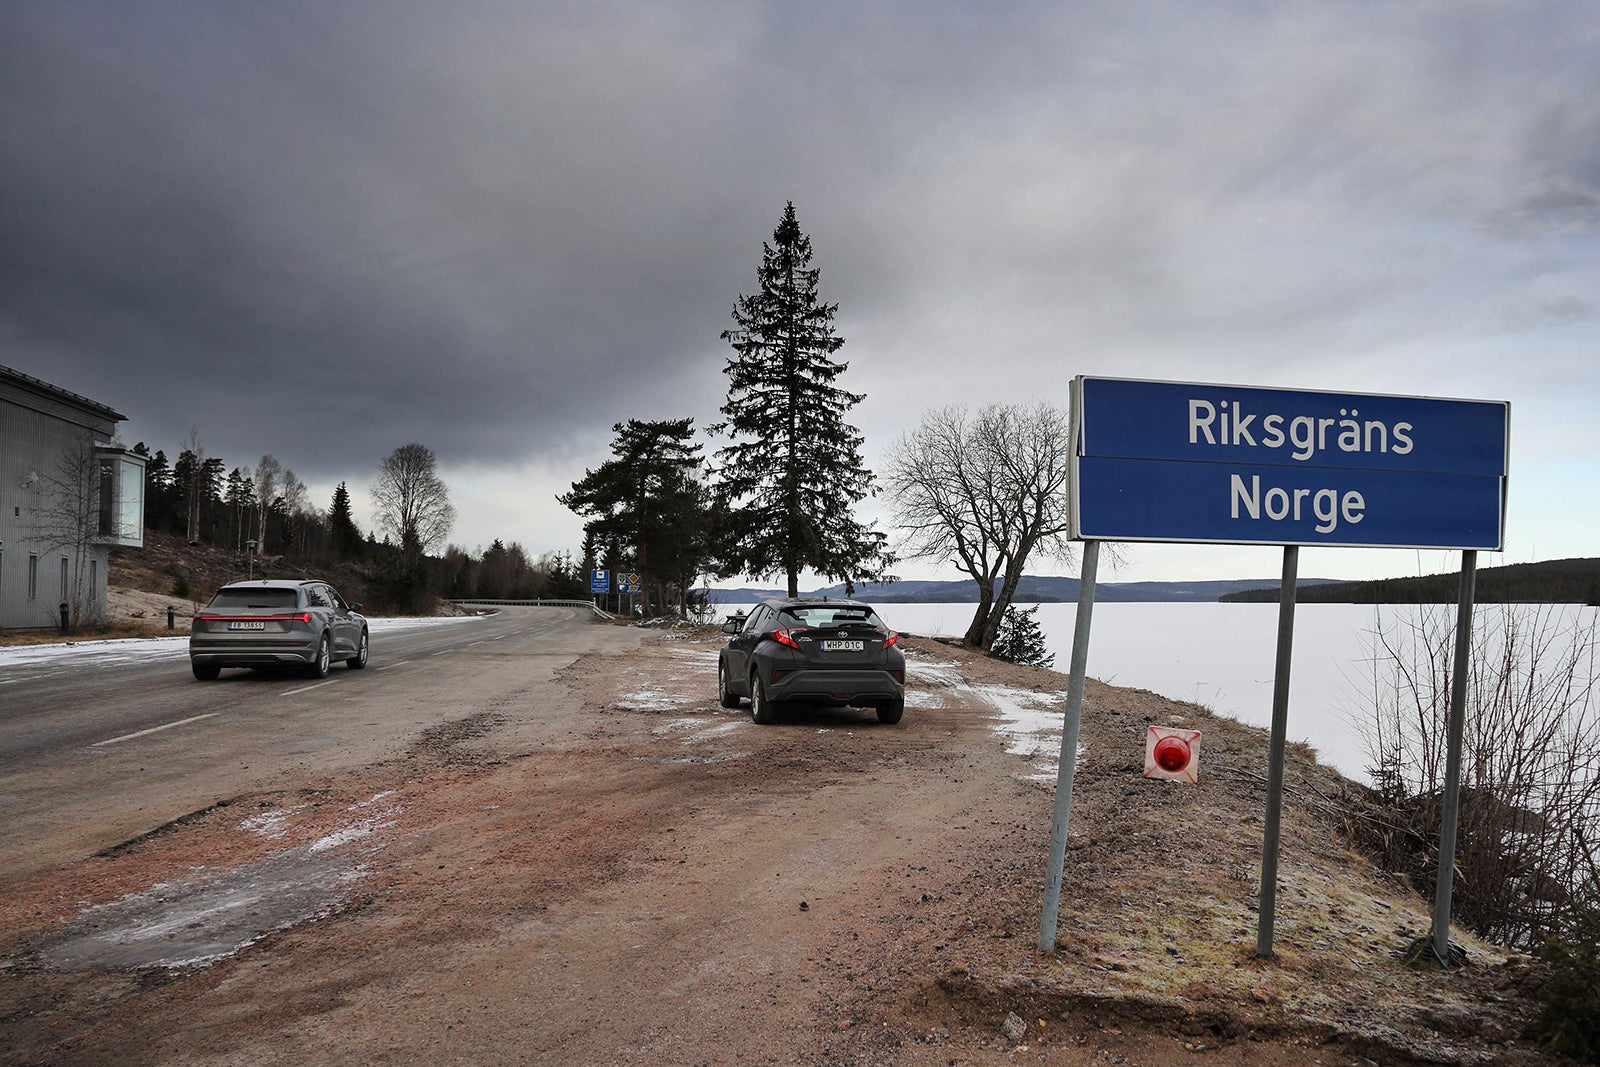 スウェーデン語で「ノルウェー国境」と表記された看板